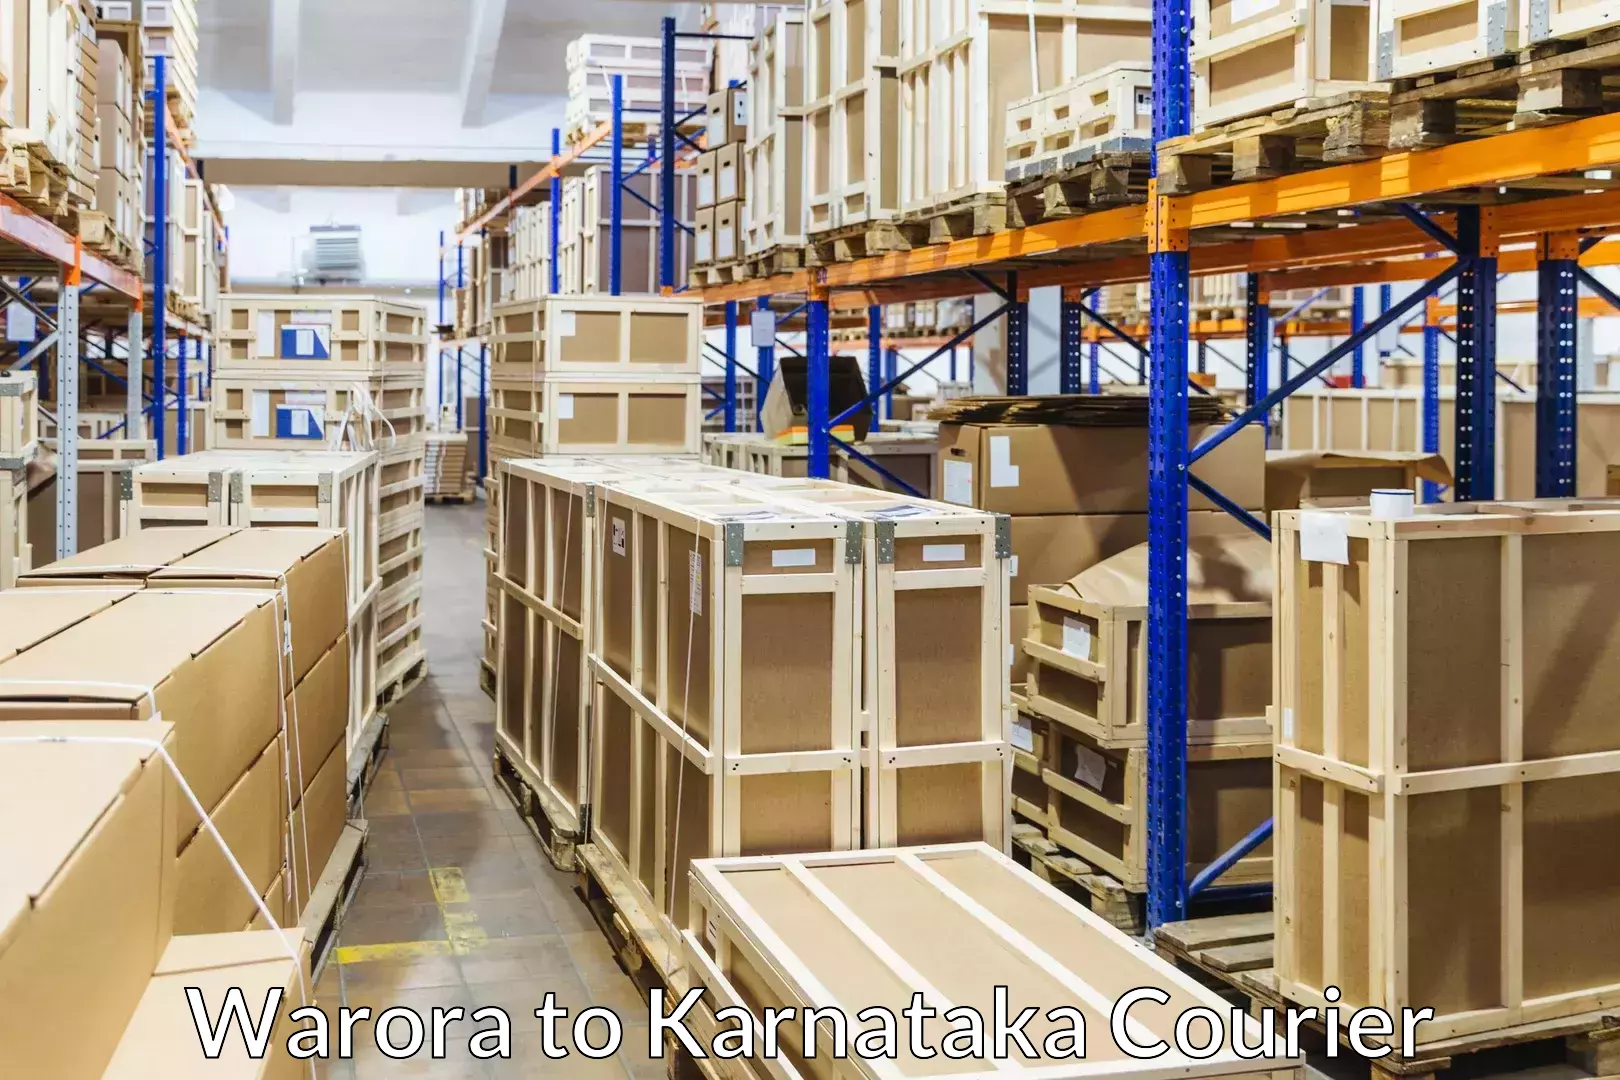 Furniture moving experts Warora to Karnataka